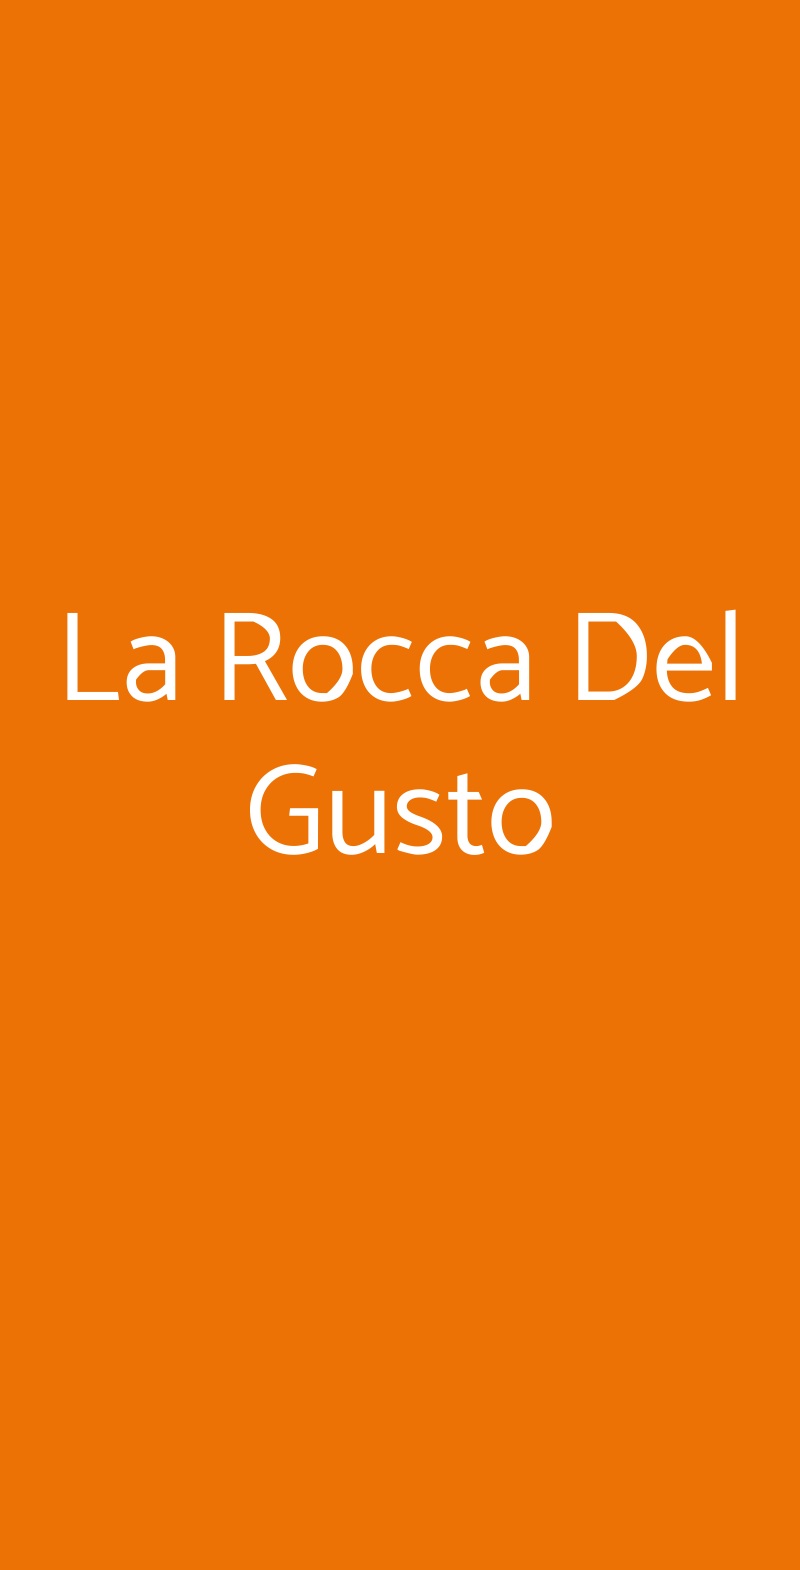 La Rocca Del Gusto Monterotondo menù 1 pagina